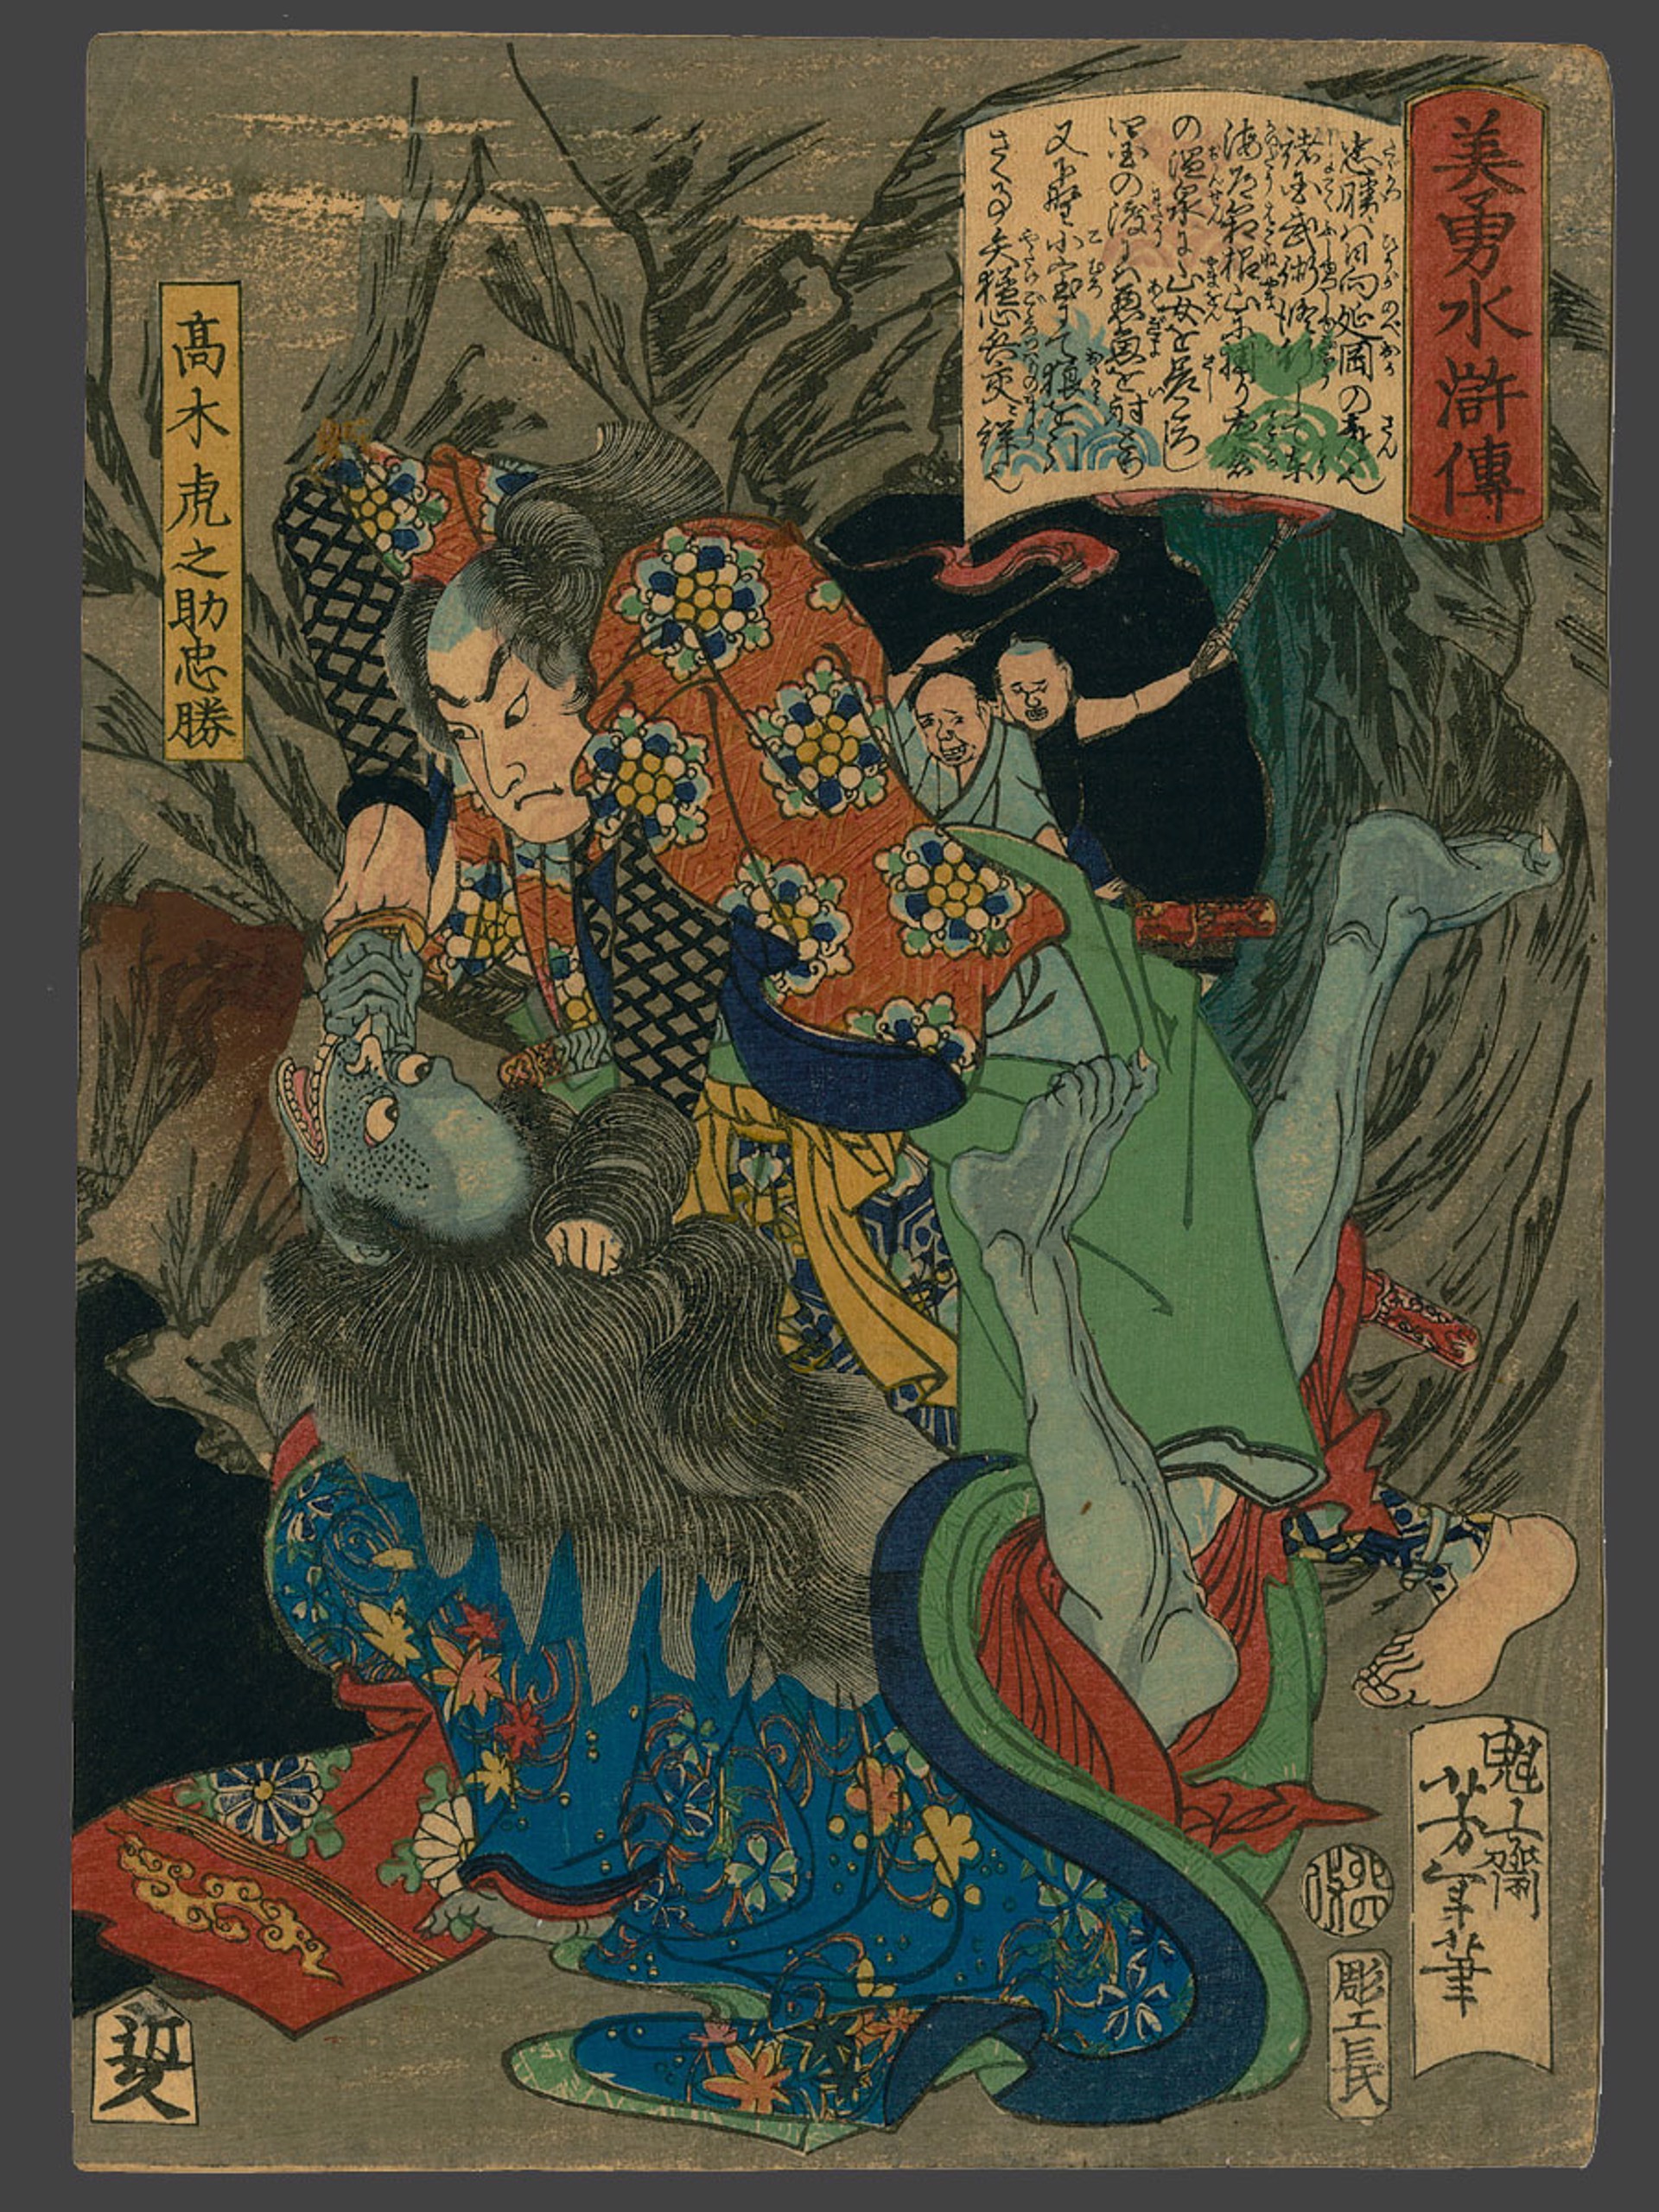 #39, Takagi Toranosuke Tadakatsu Slaying a Demon in a Cave Biyu Suikoden (Beauty and Valor in Tales of the Water Margin) by Yoshitoshi